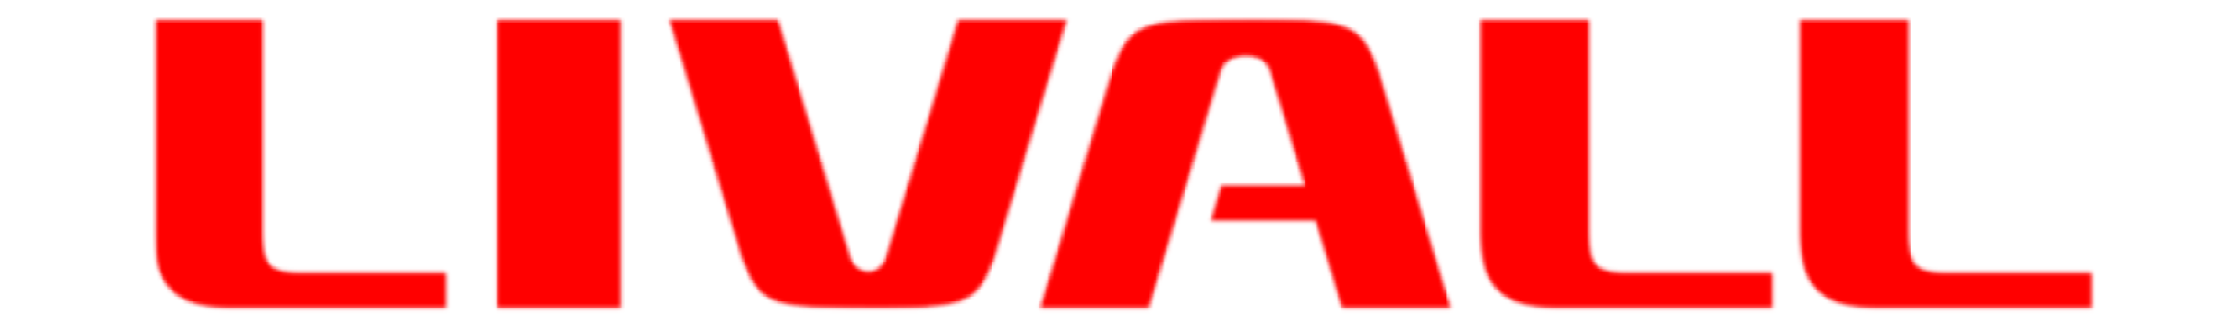 livall_logo